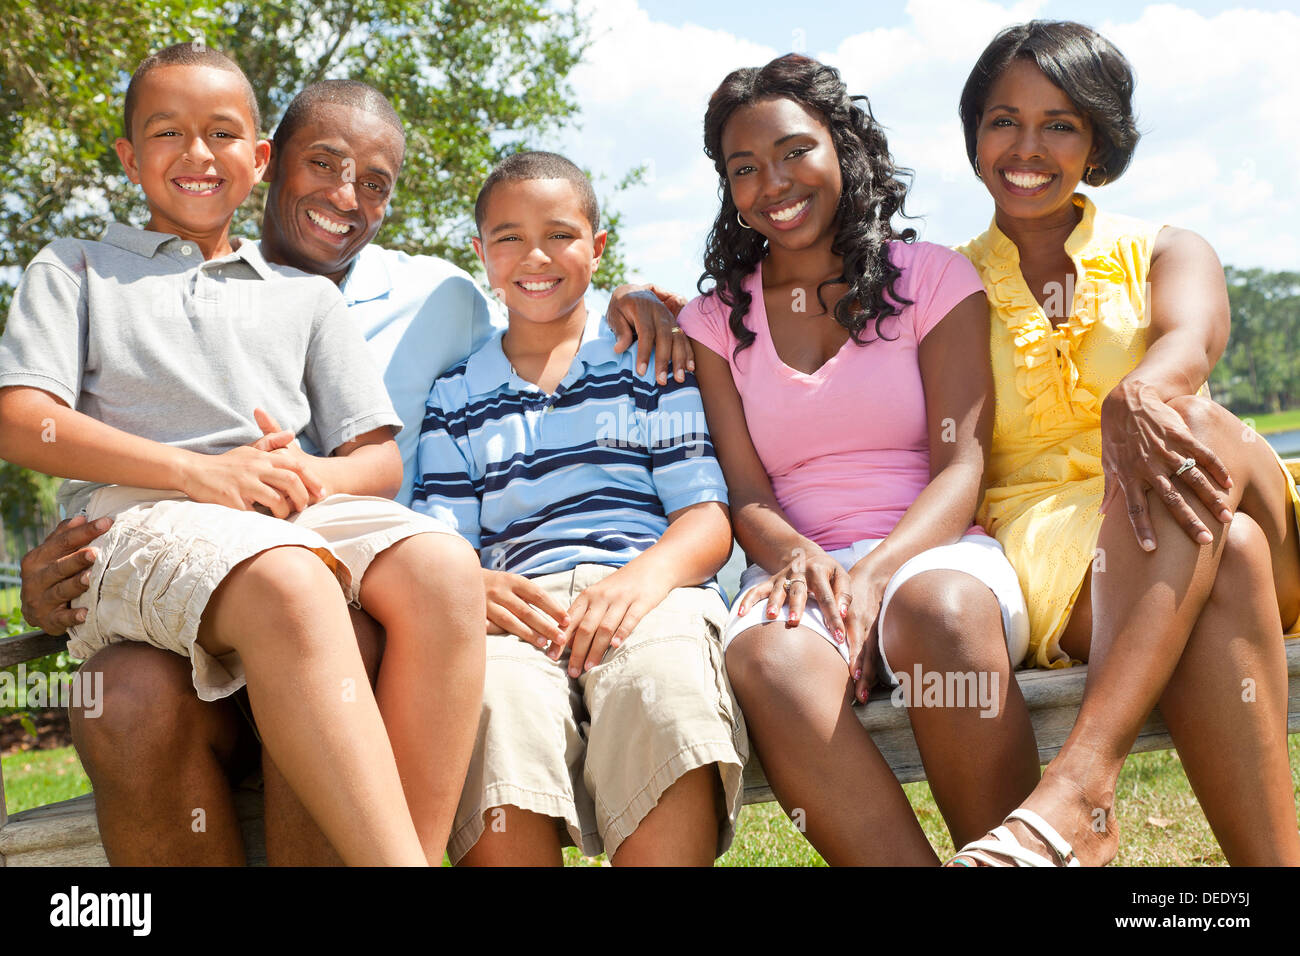 Una feliz familia americana africana negra de dos padres y tres hijos, dos chicos una chica, sentados juntos en el exterior. Foto de stock